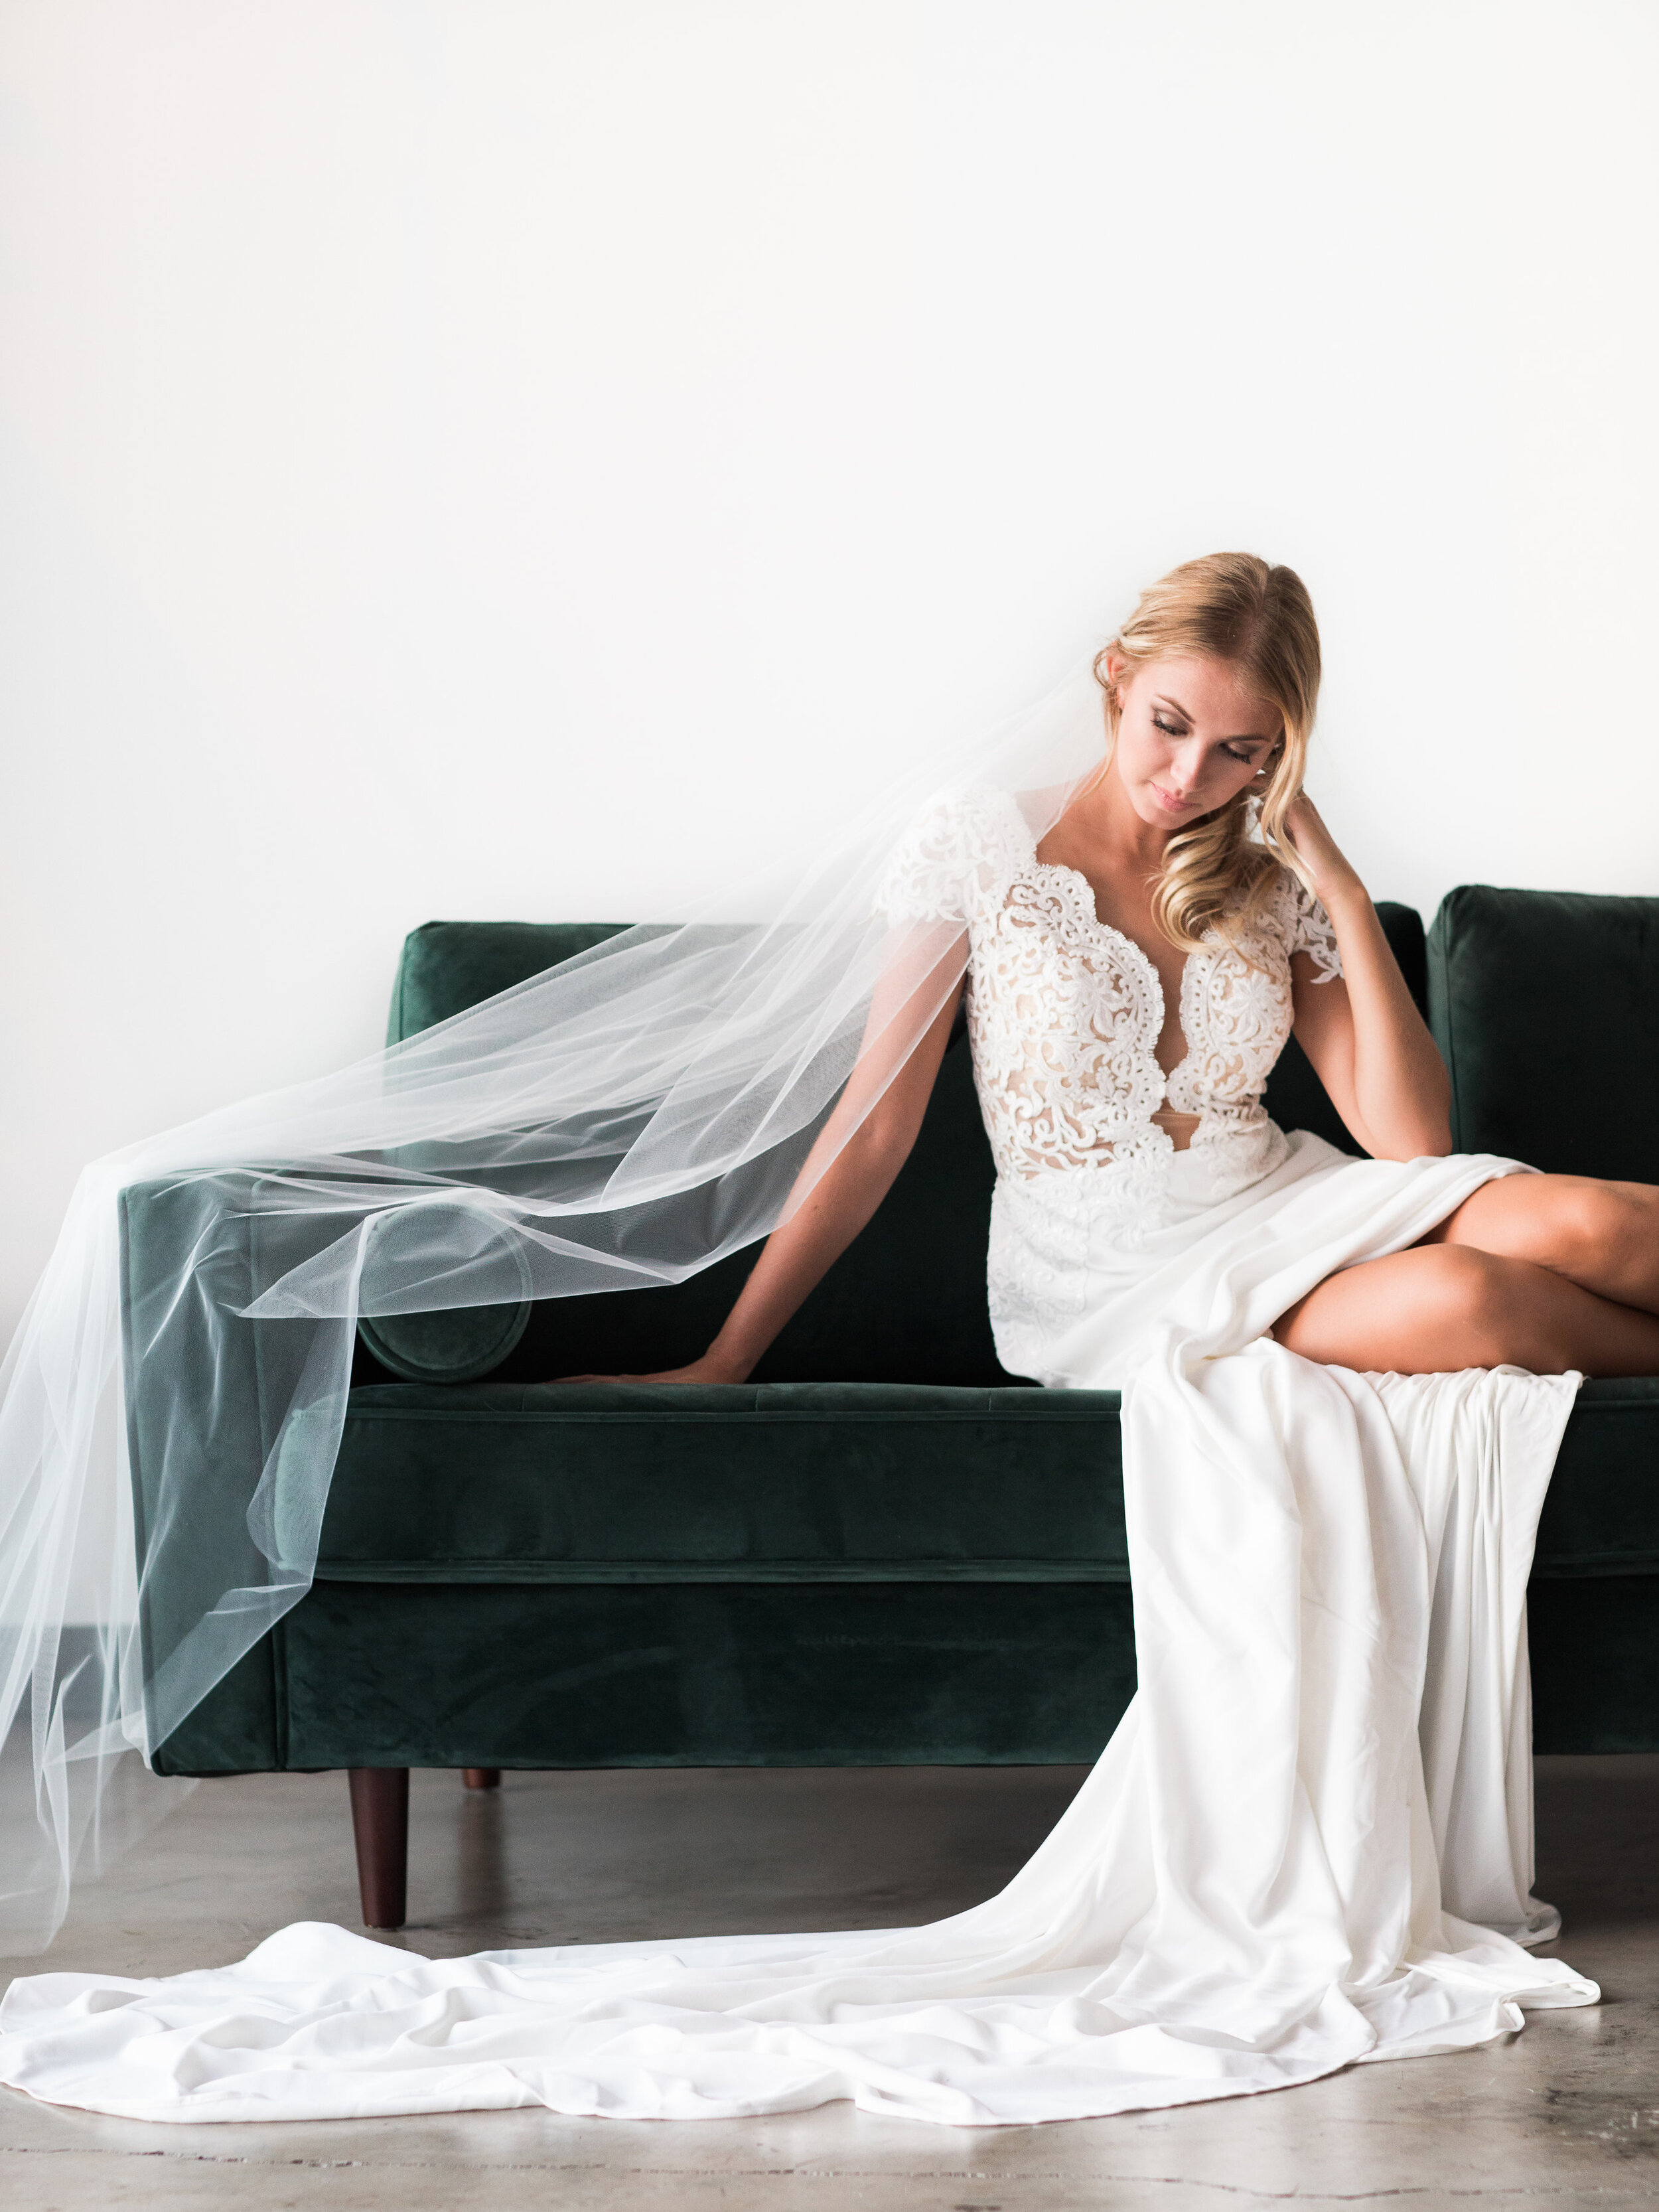 Spokane bride wedding dress model velvet couch honest in ivory veil